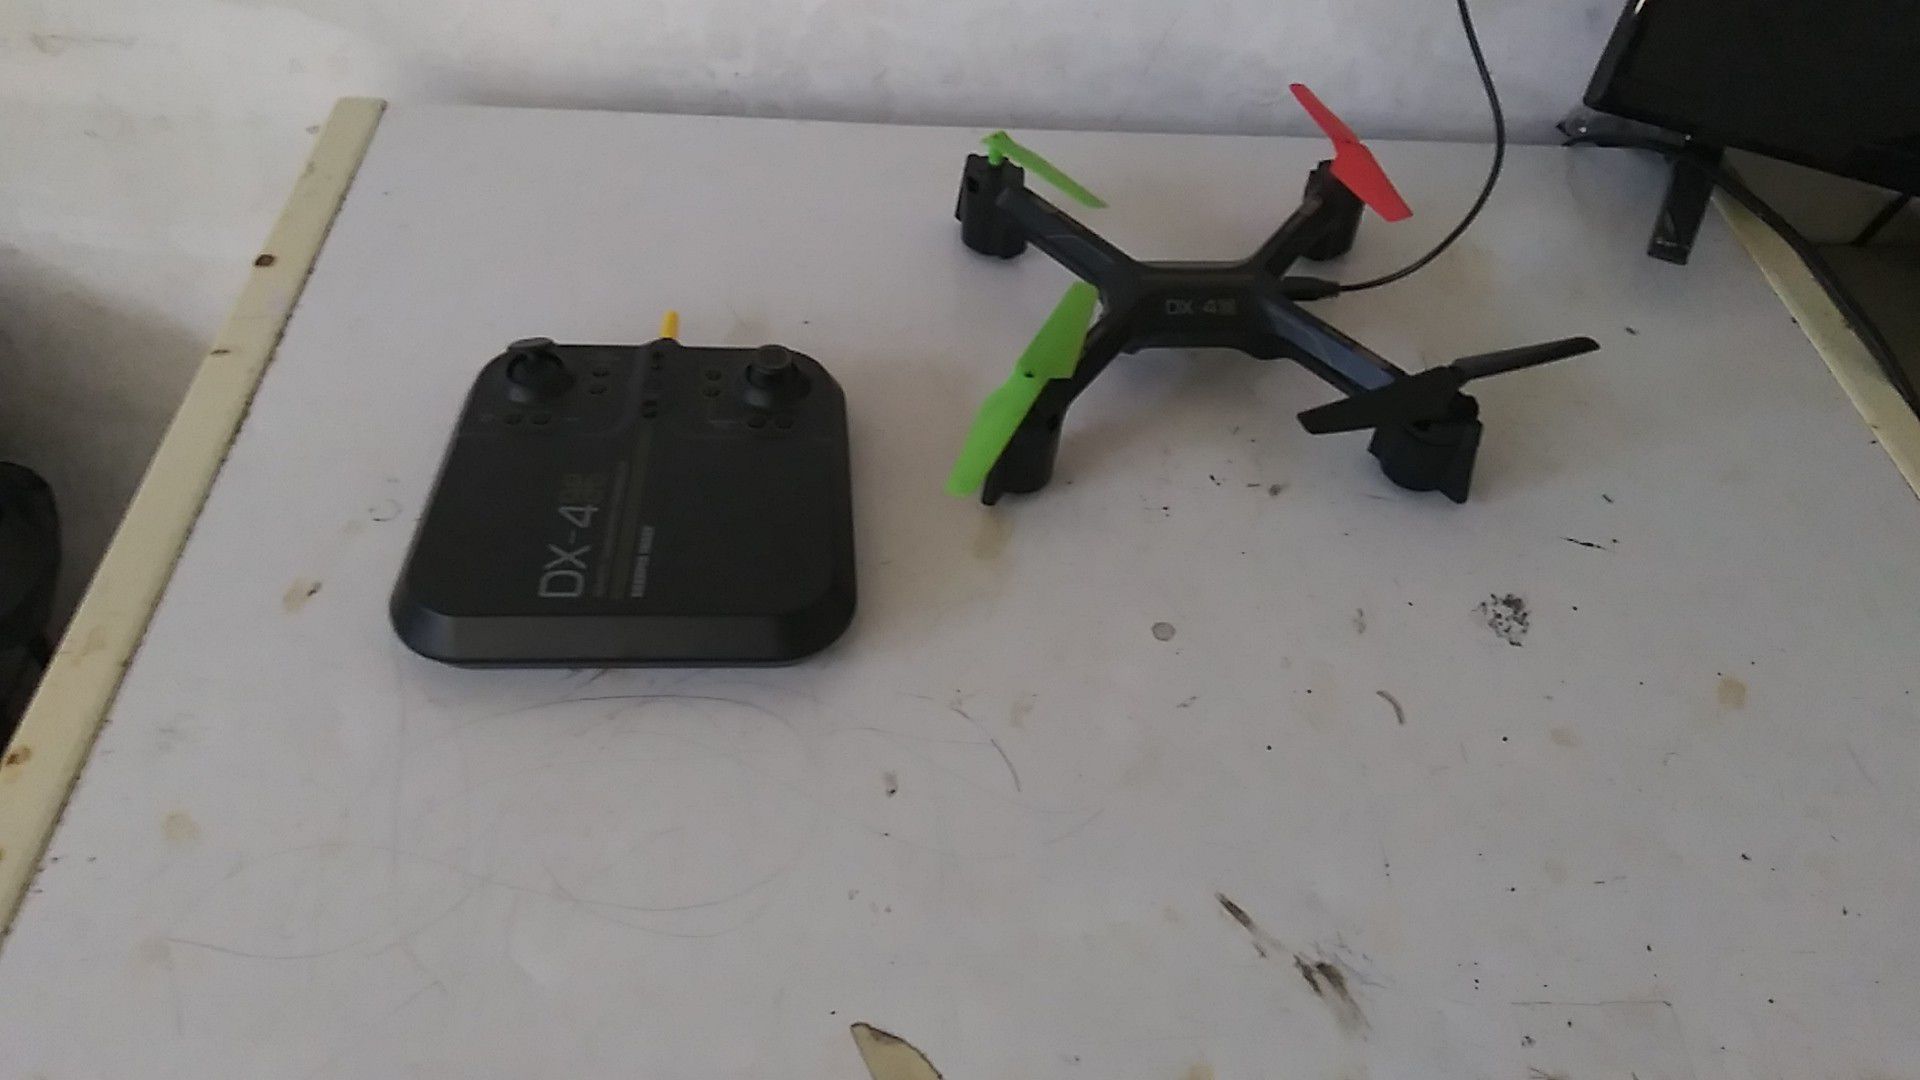 Small drone